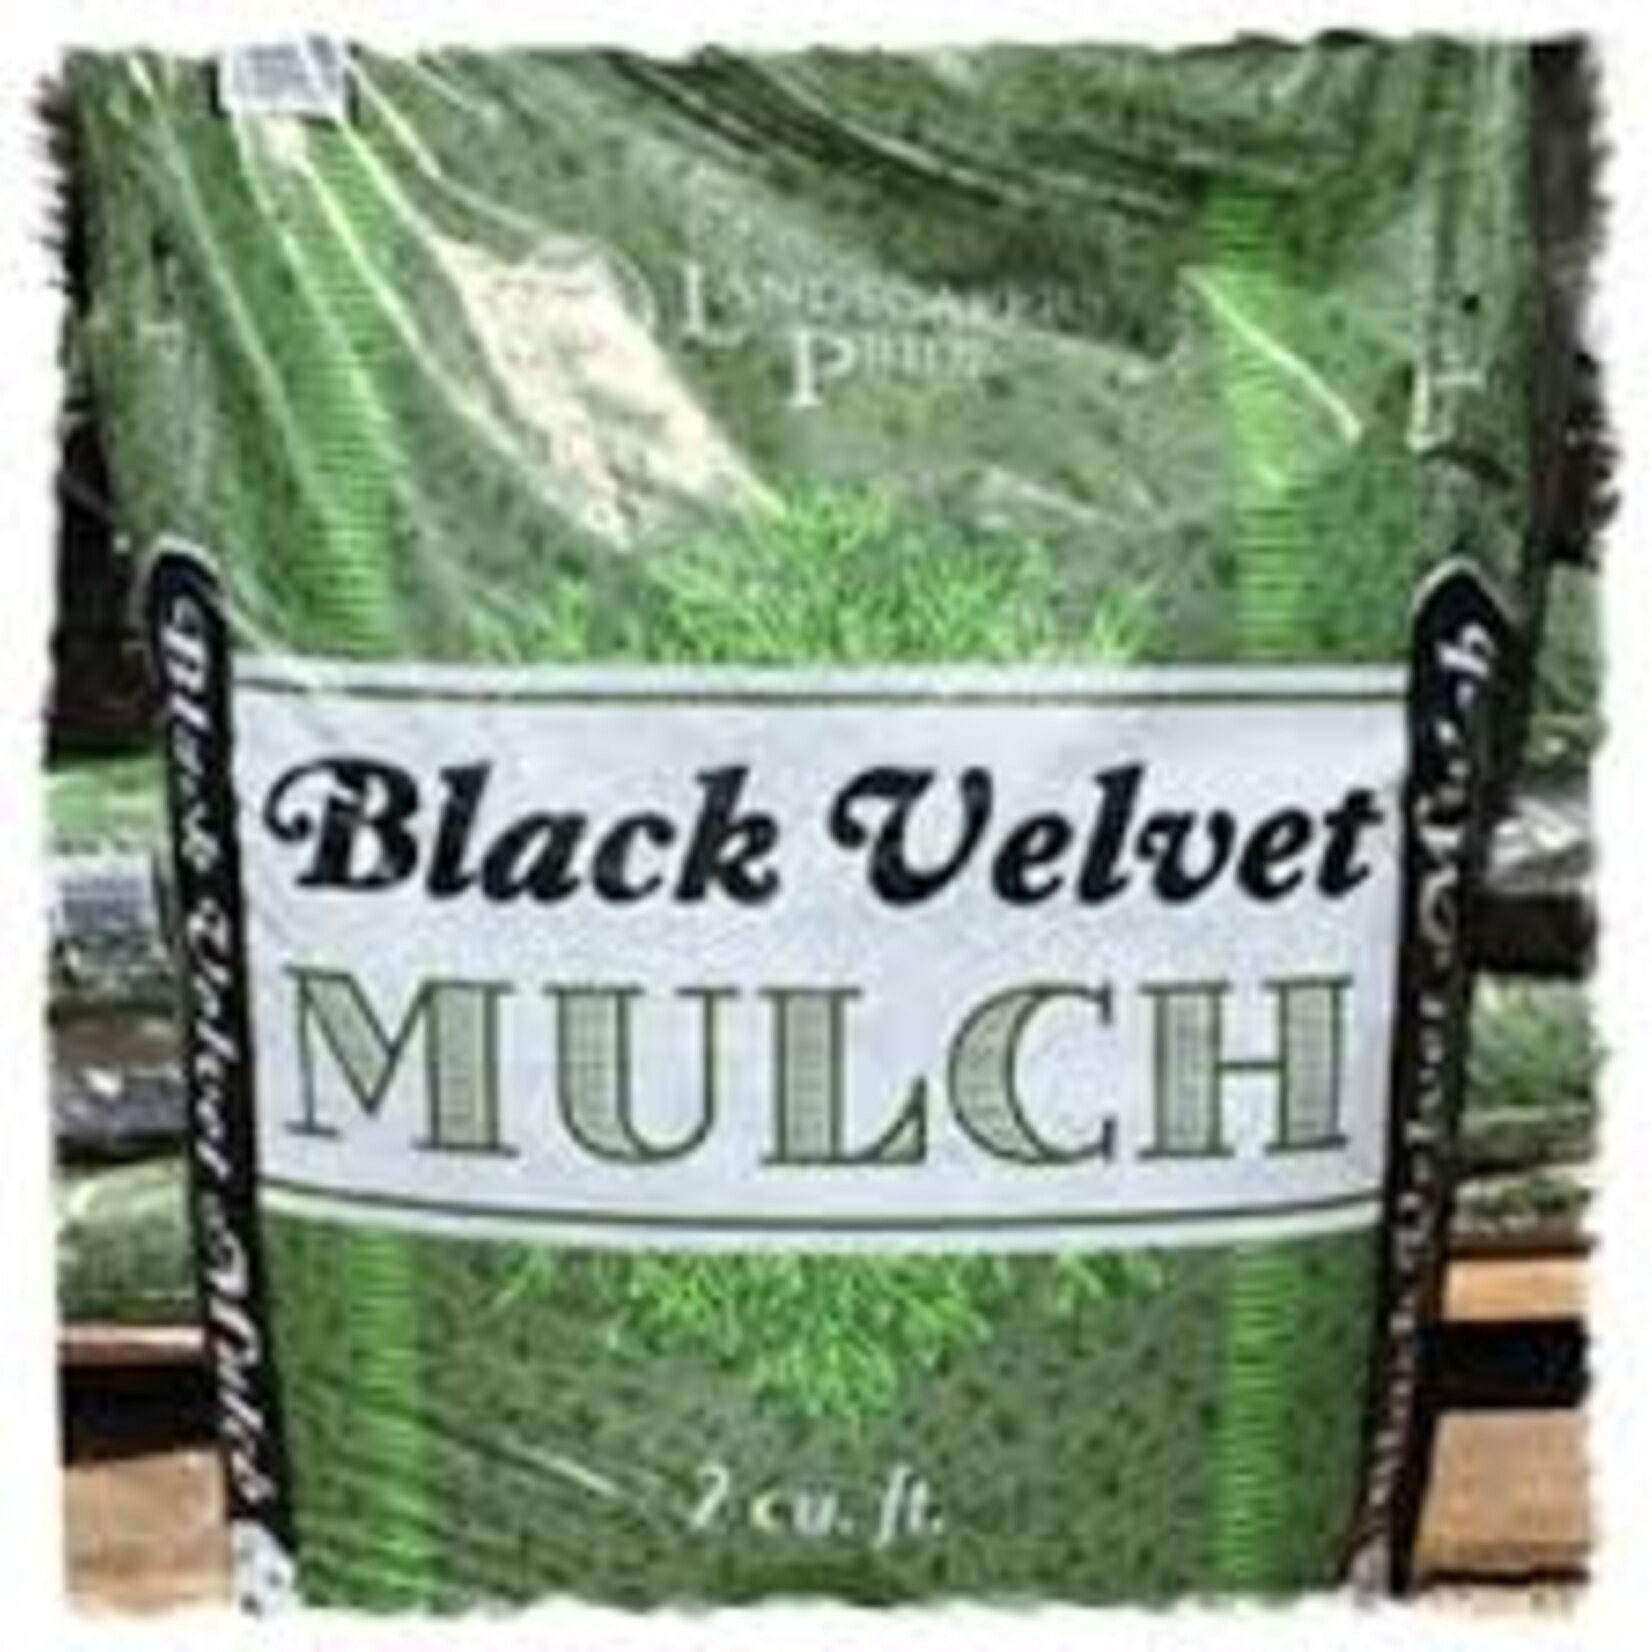 Mulch, Black Velvet  2 cf.